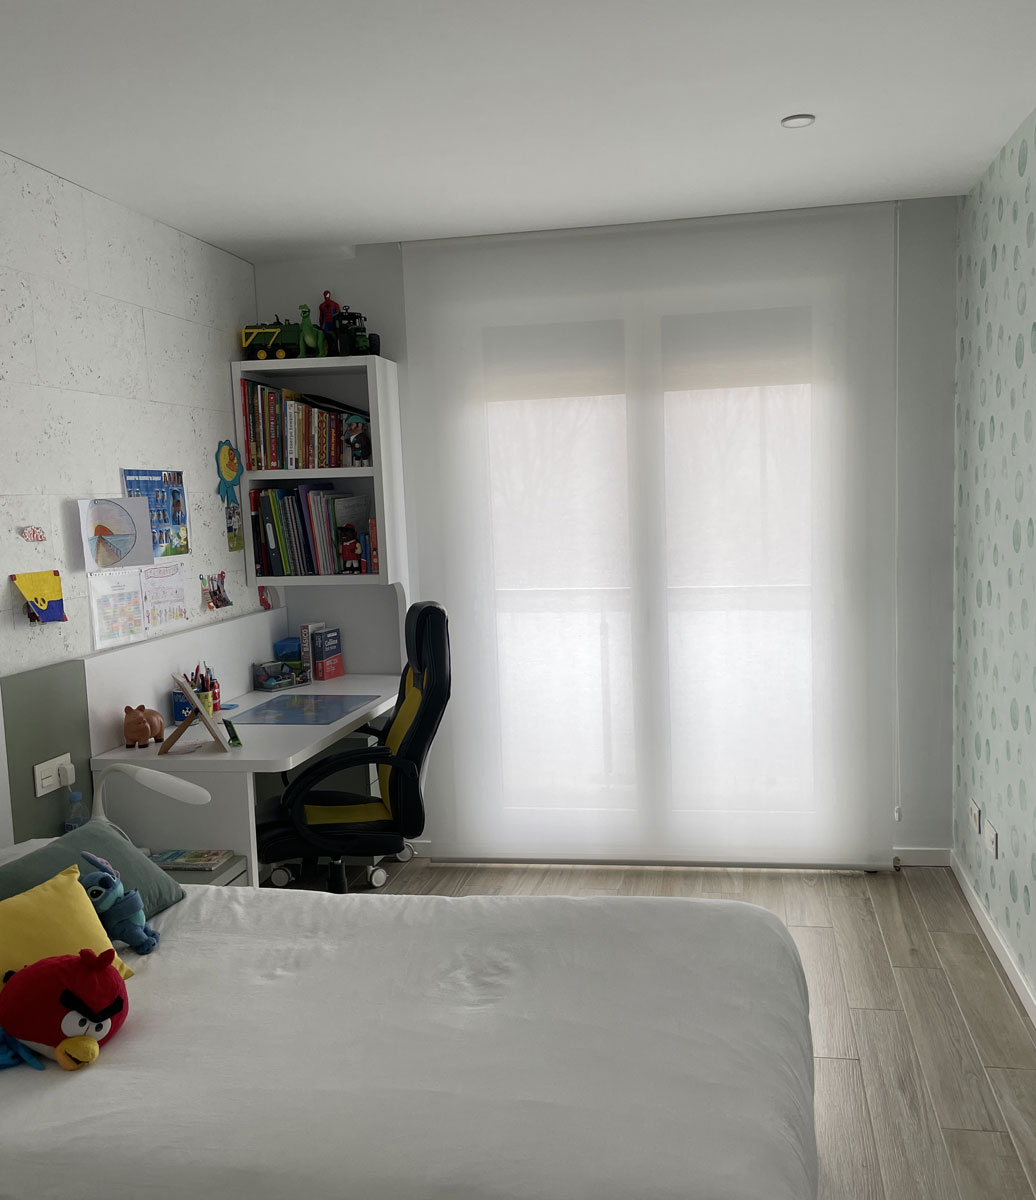 Estores y cortinas para dormitorios infantiles y juveniles